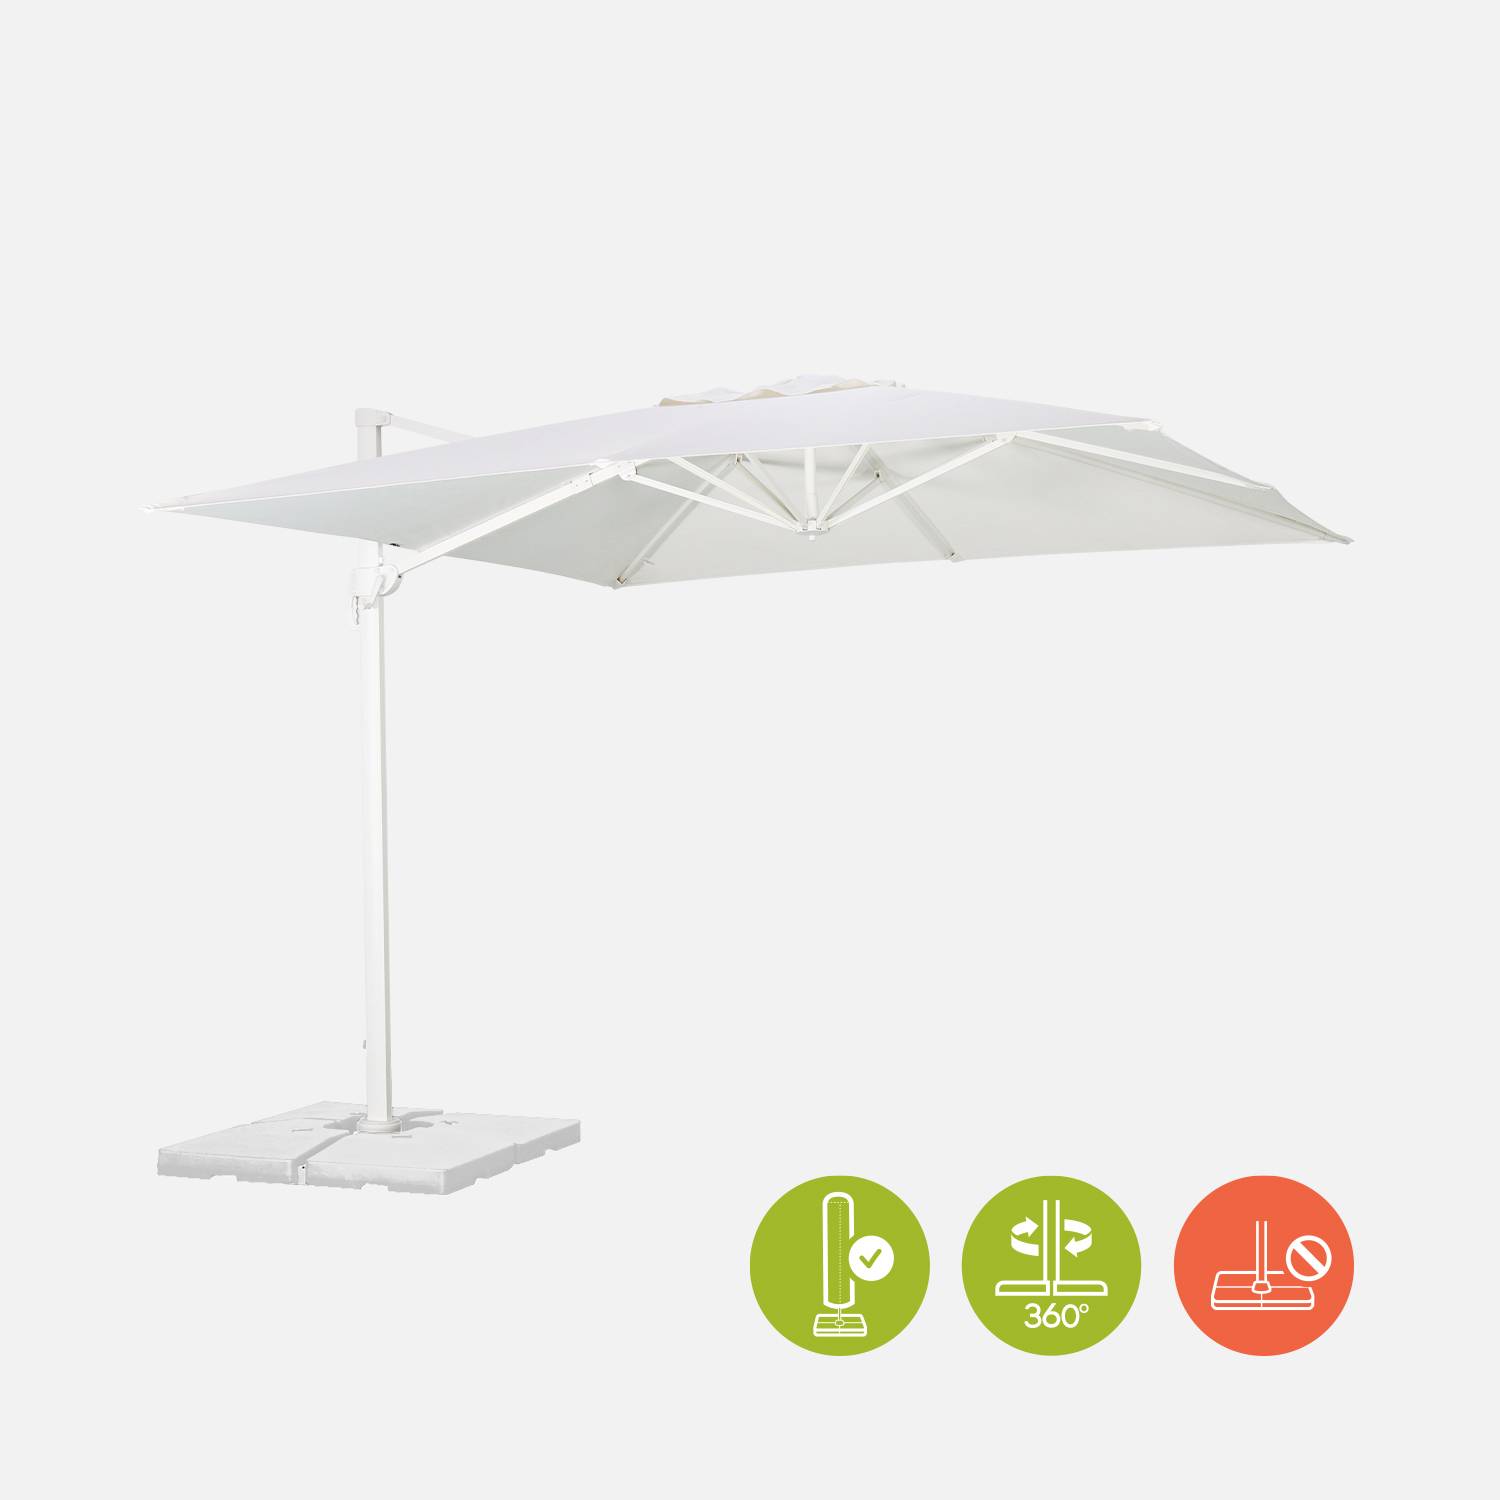 Hoogwaardige 3 x 3m vierkante parasol- Falgos - Wit - Kantelbare, opvouwbare en 360° draaibare zweefparasol Photo4